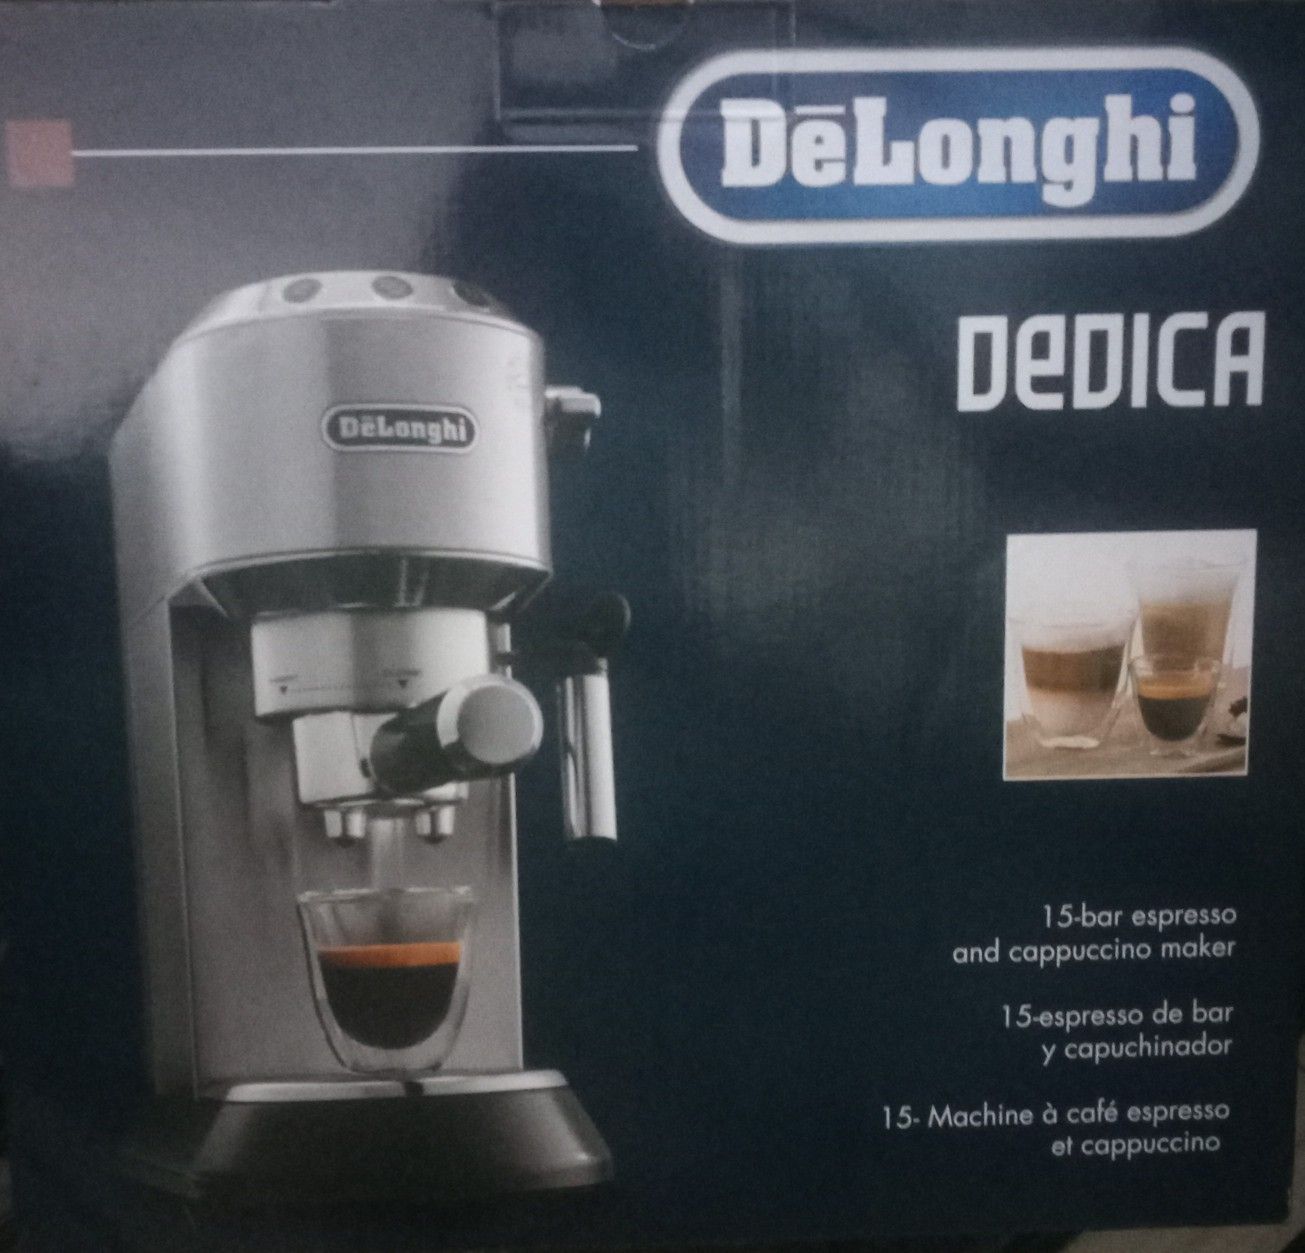 DeLonghi Dedica espresso machine